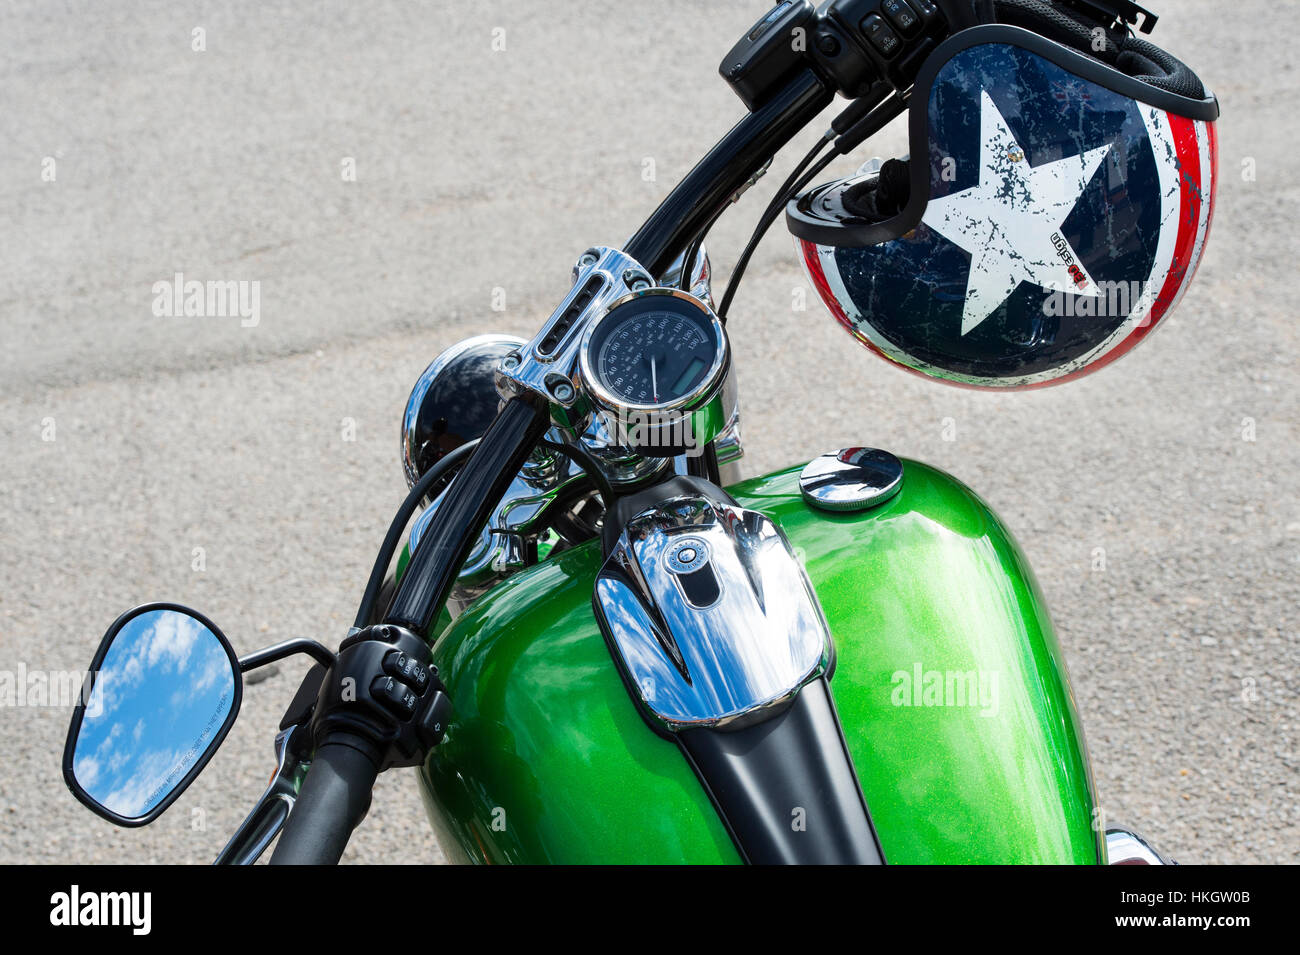 Moto Harley Davidson et casque de résumé Banque D'Images